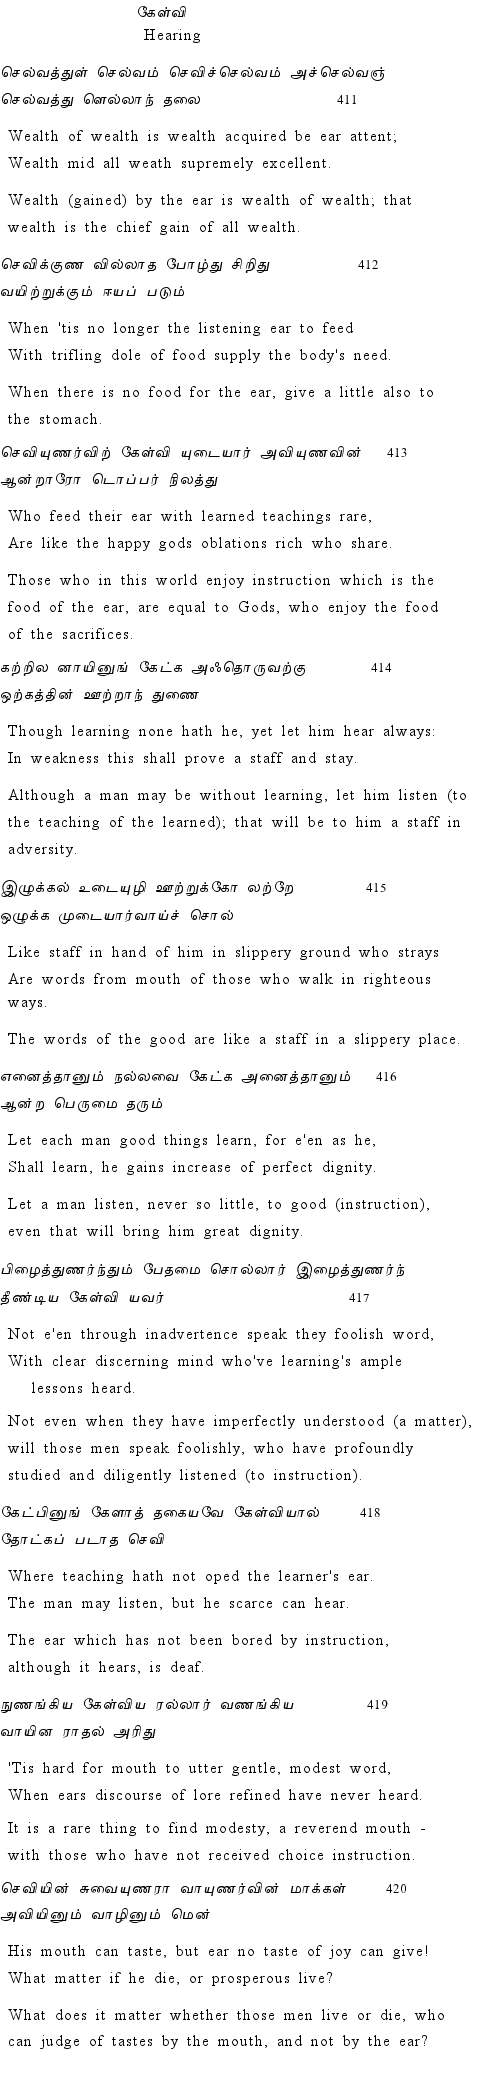 Text of Adhikaram 42